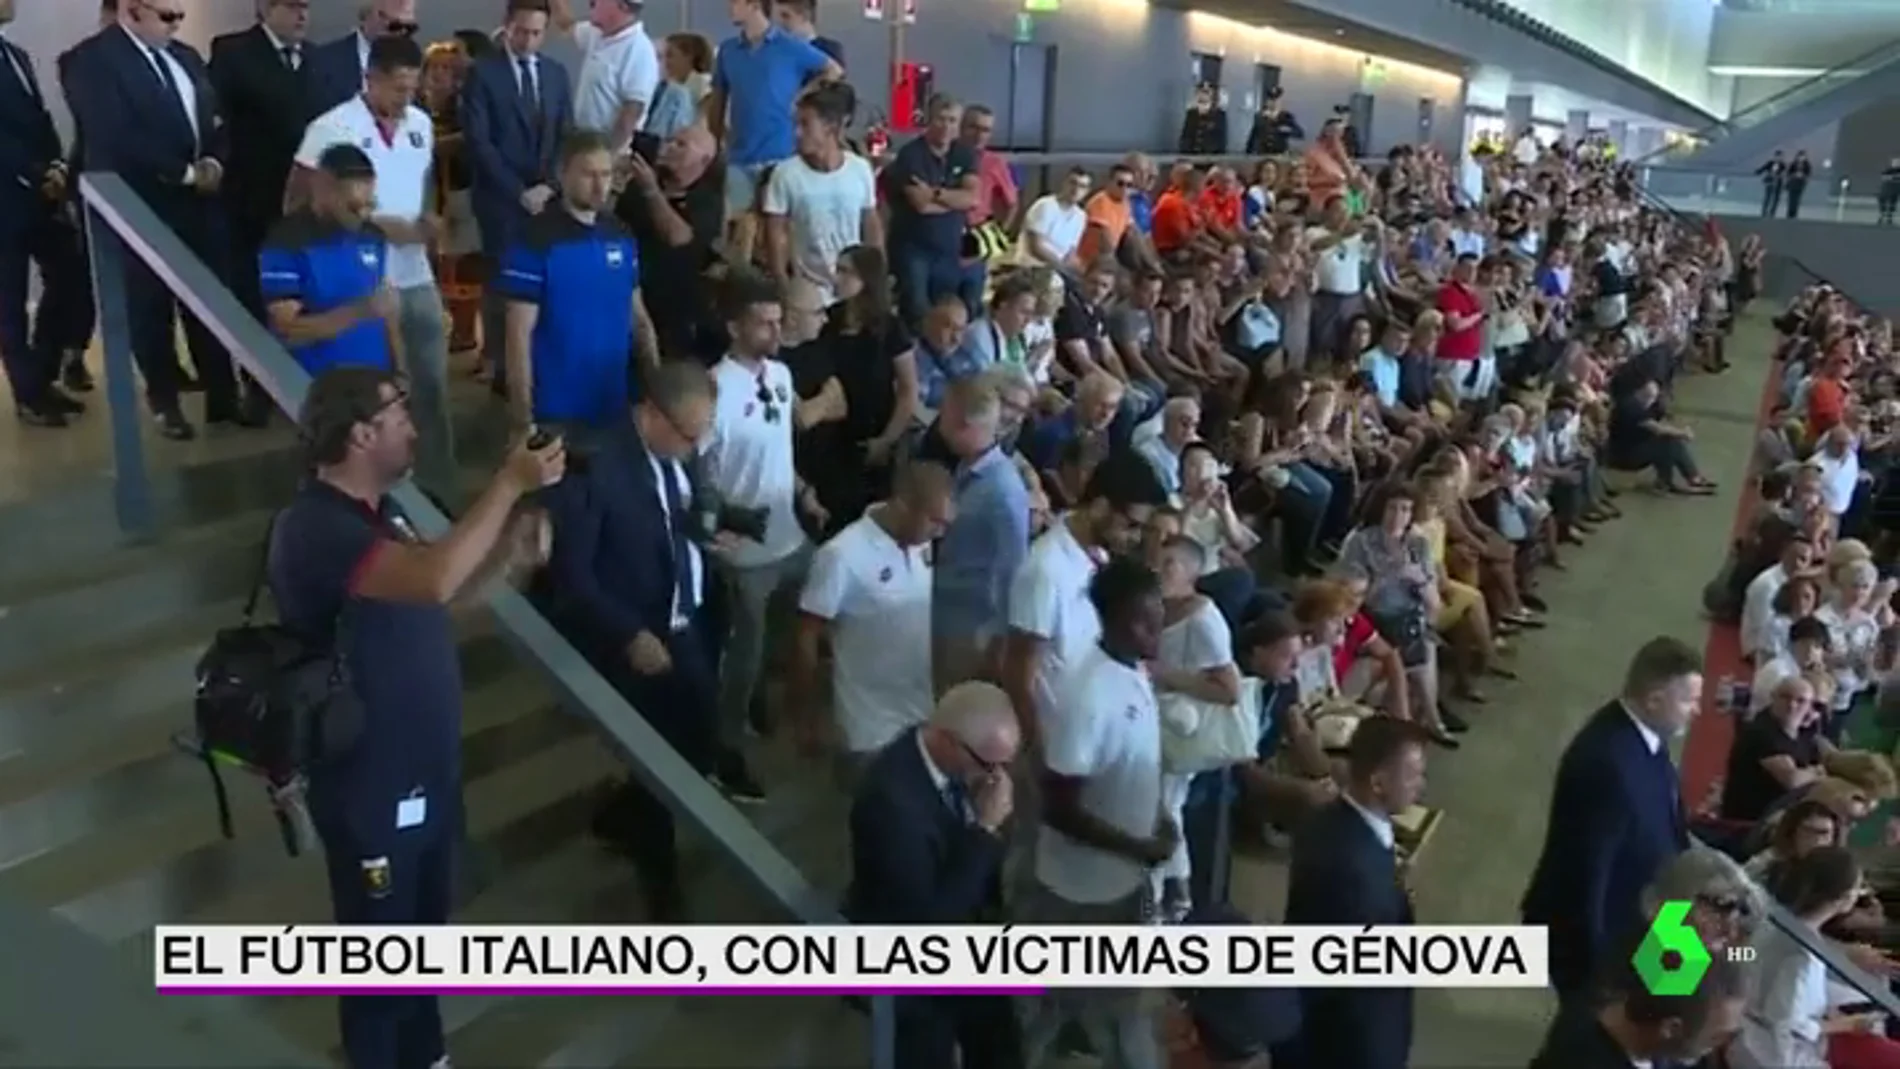 La Sampdoria y el Genoa, presentes en los funerales de las víctimas de Génova